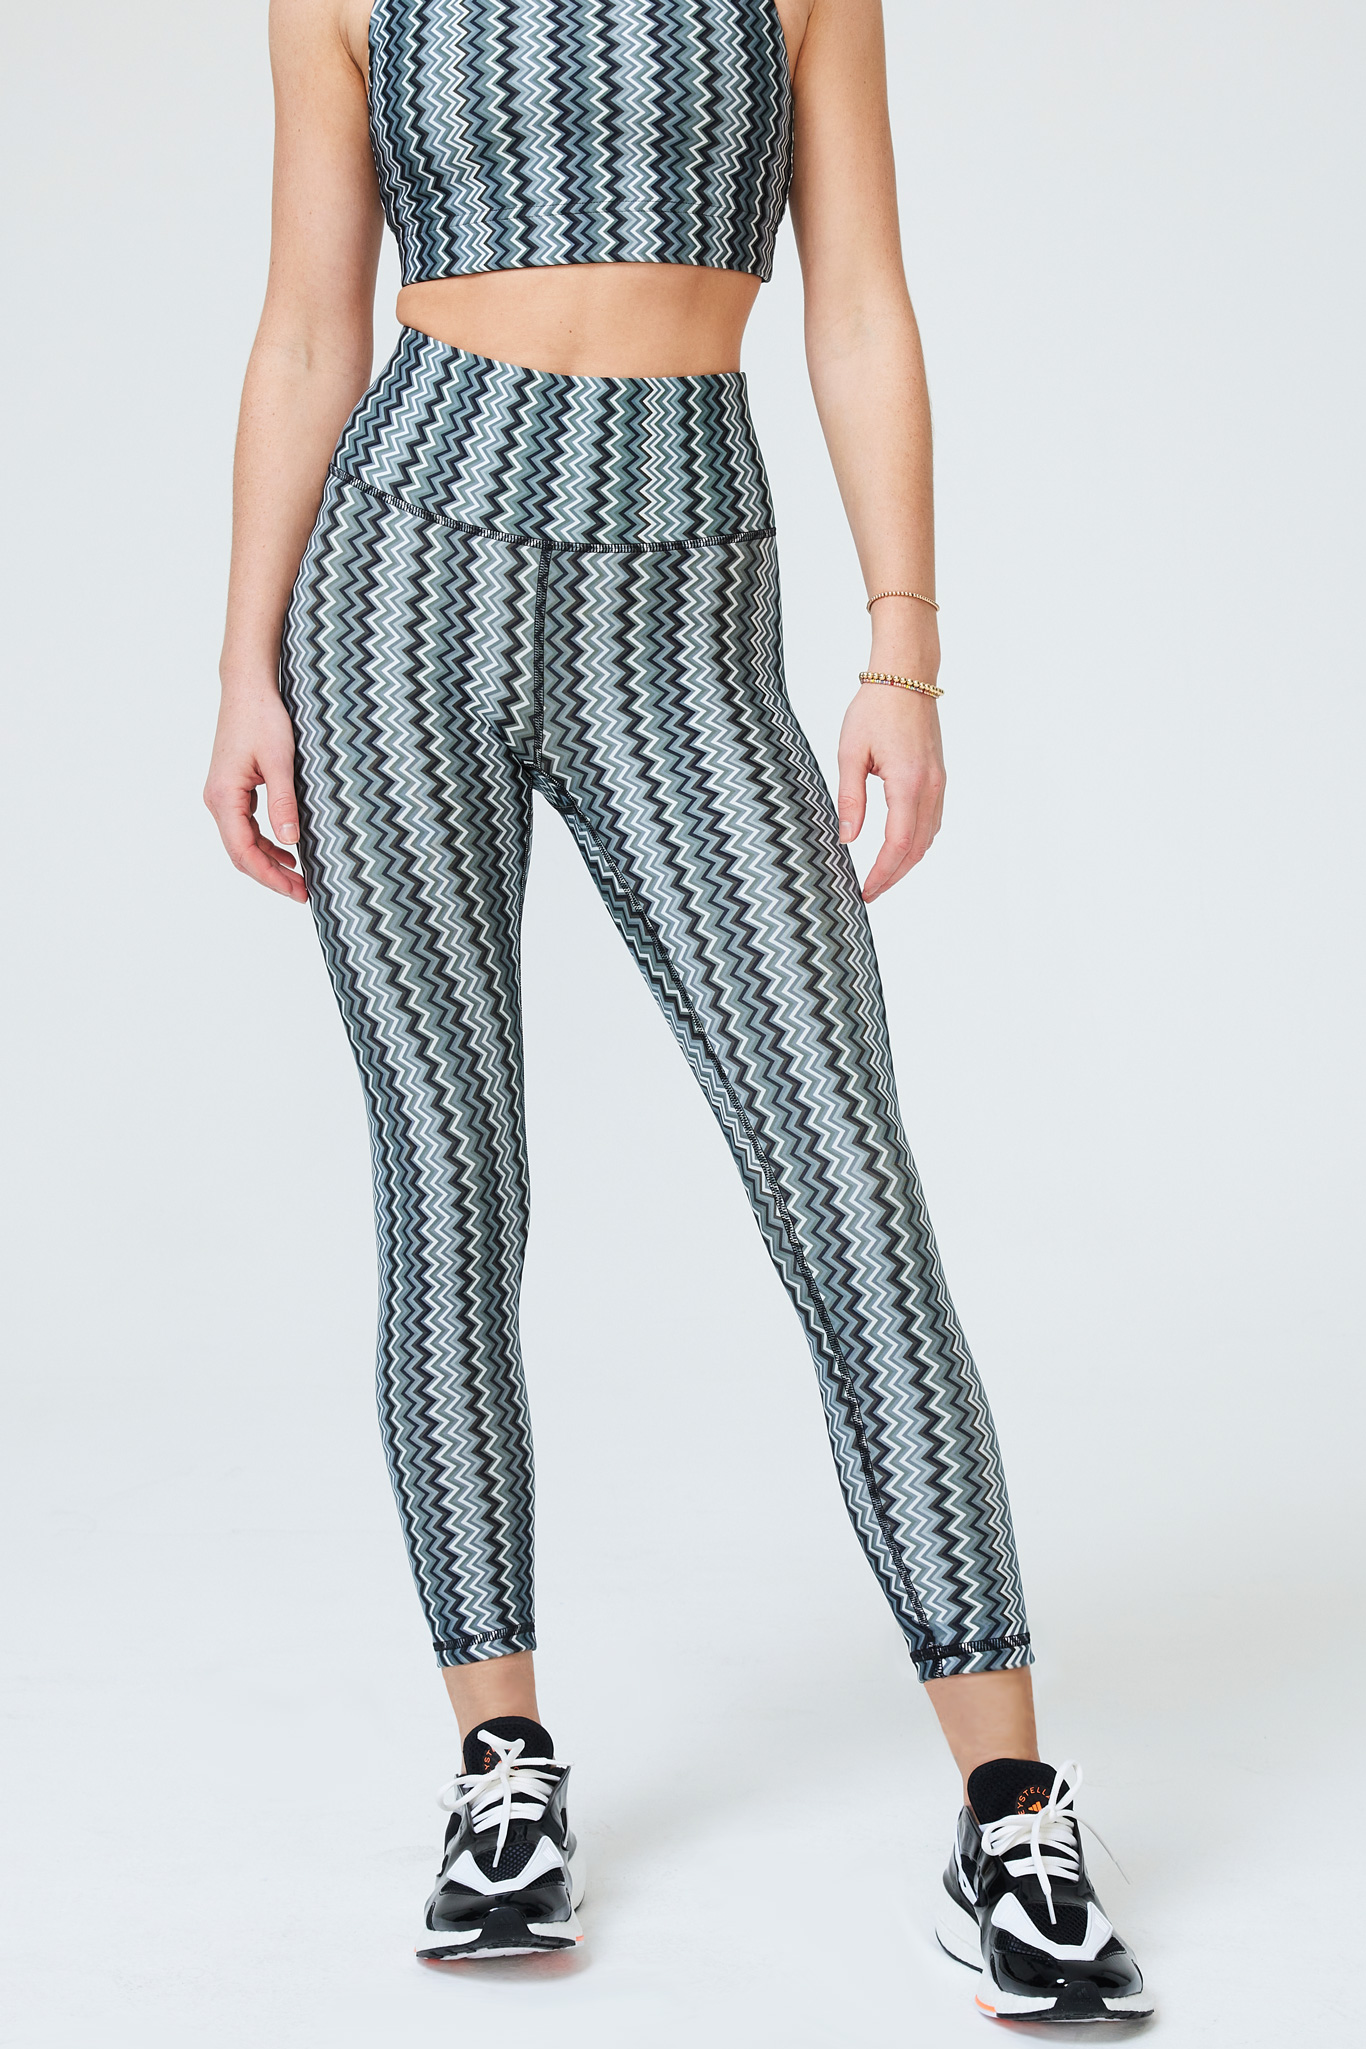 Black & White Striped Crop Sleep Legging  Affordable plus size clothing,  Pajamas women, Sleep leggings